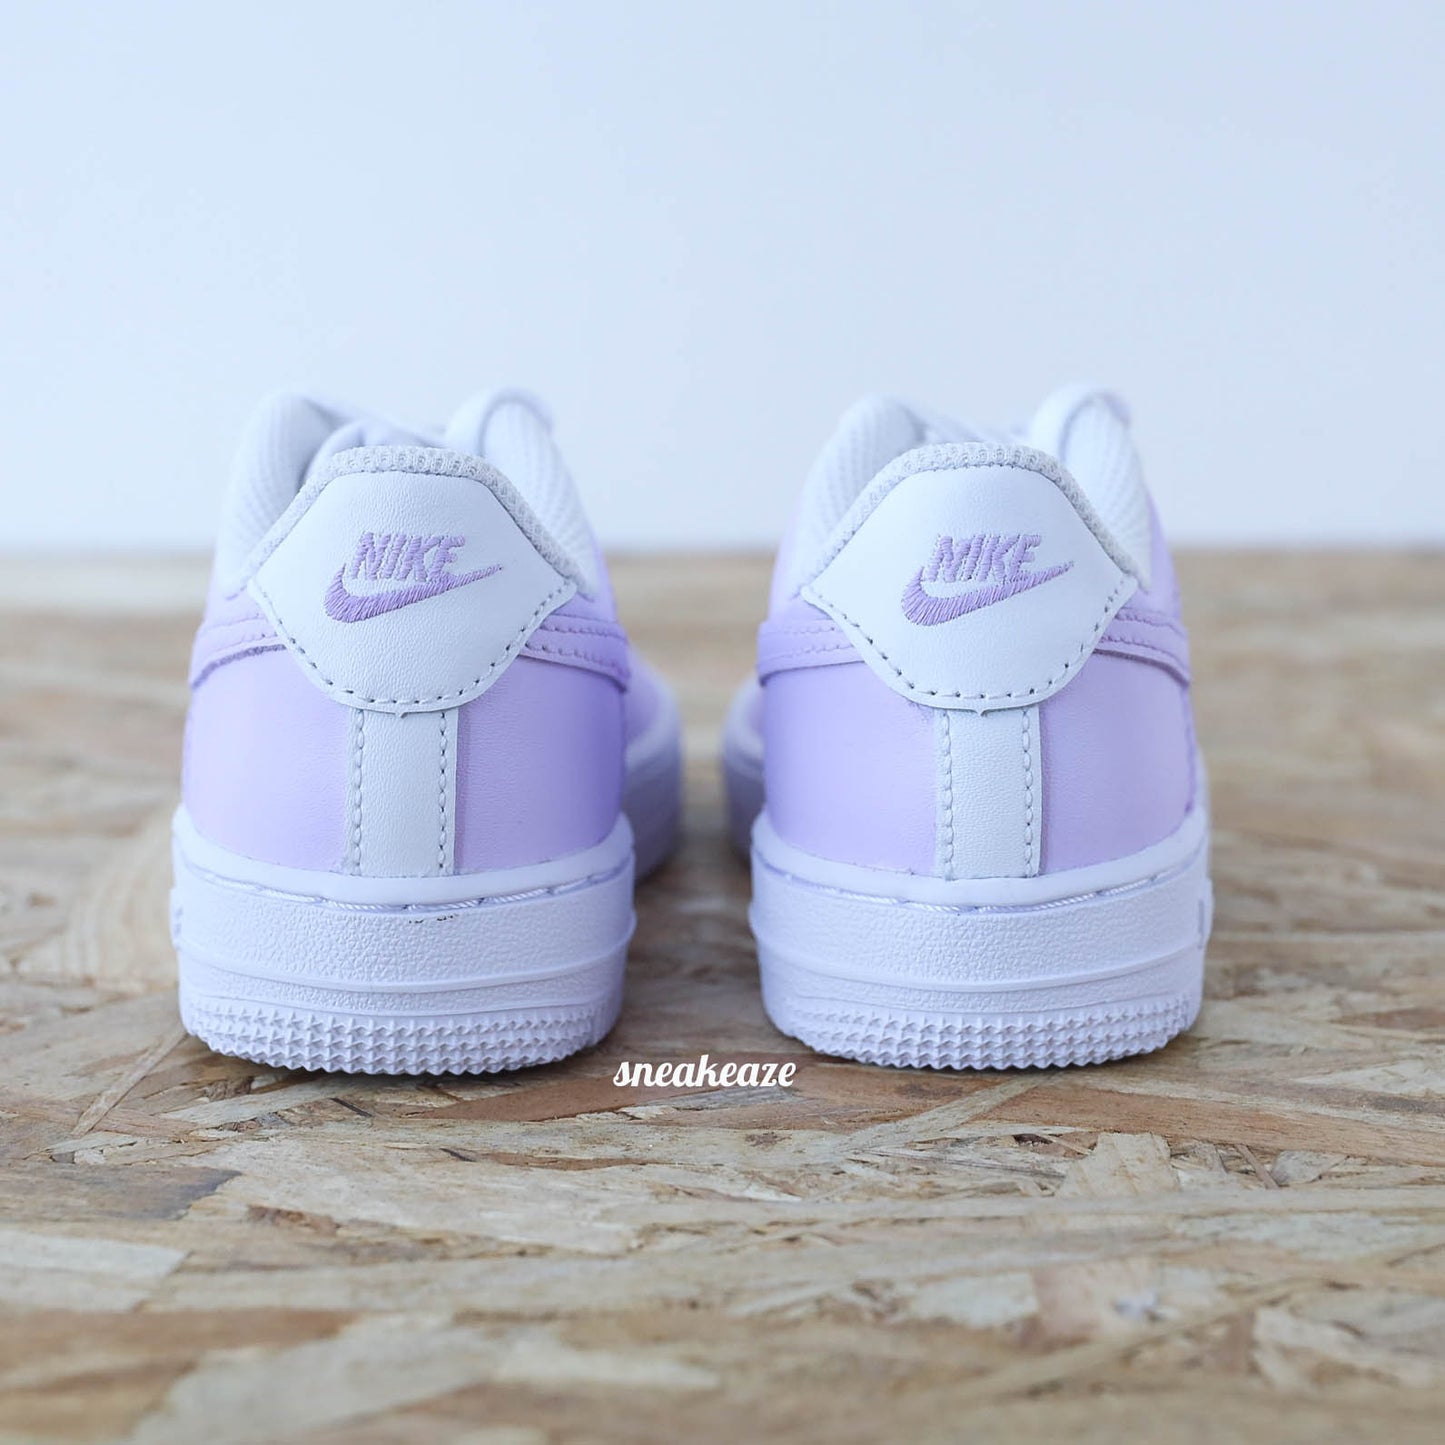 Baskets nike air force 1 enfant custom lila pastel sneakeaze customs skz